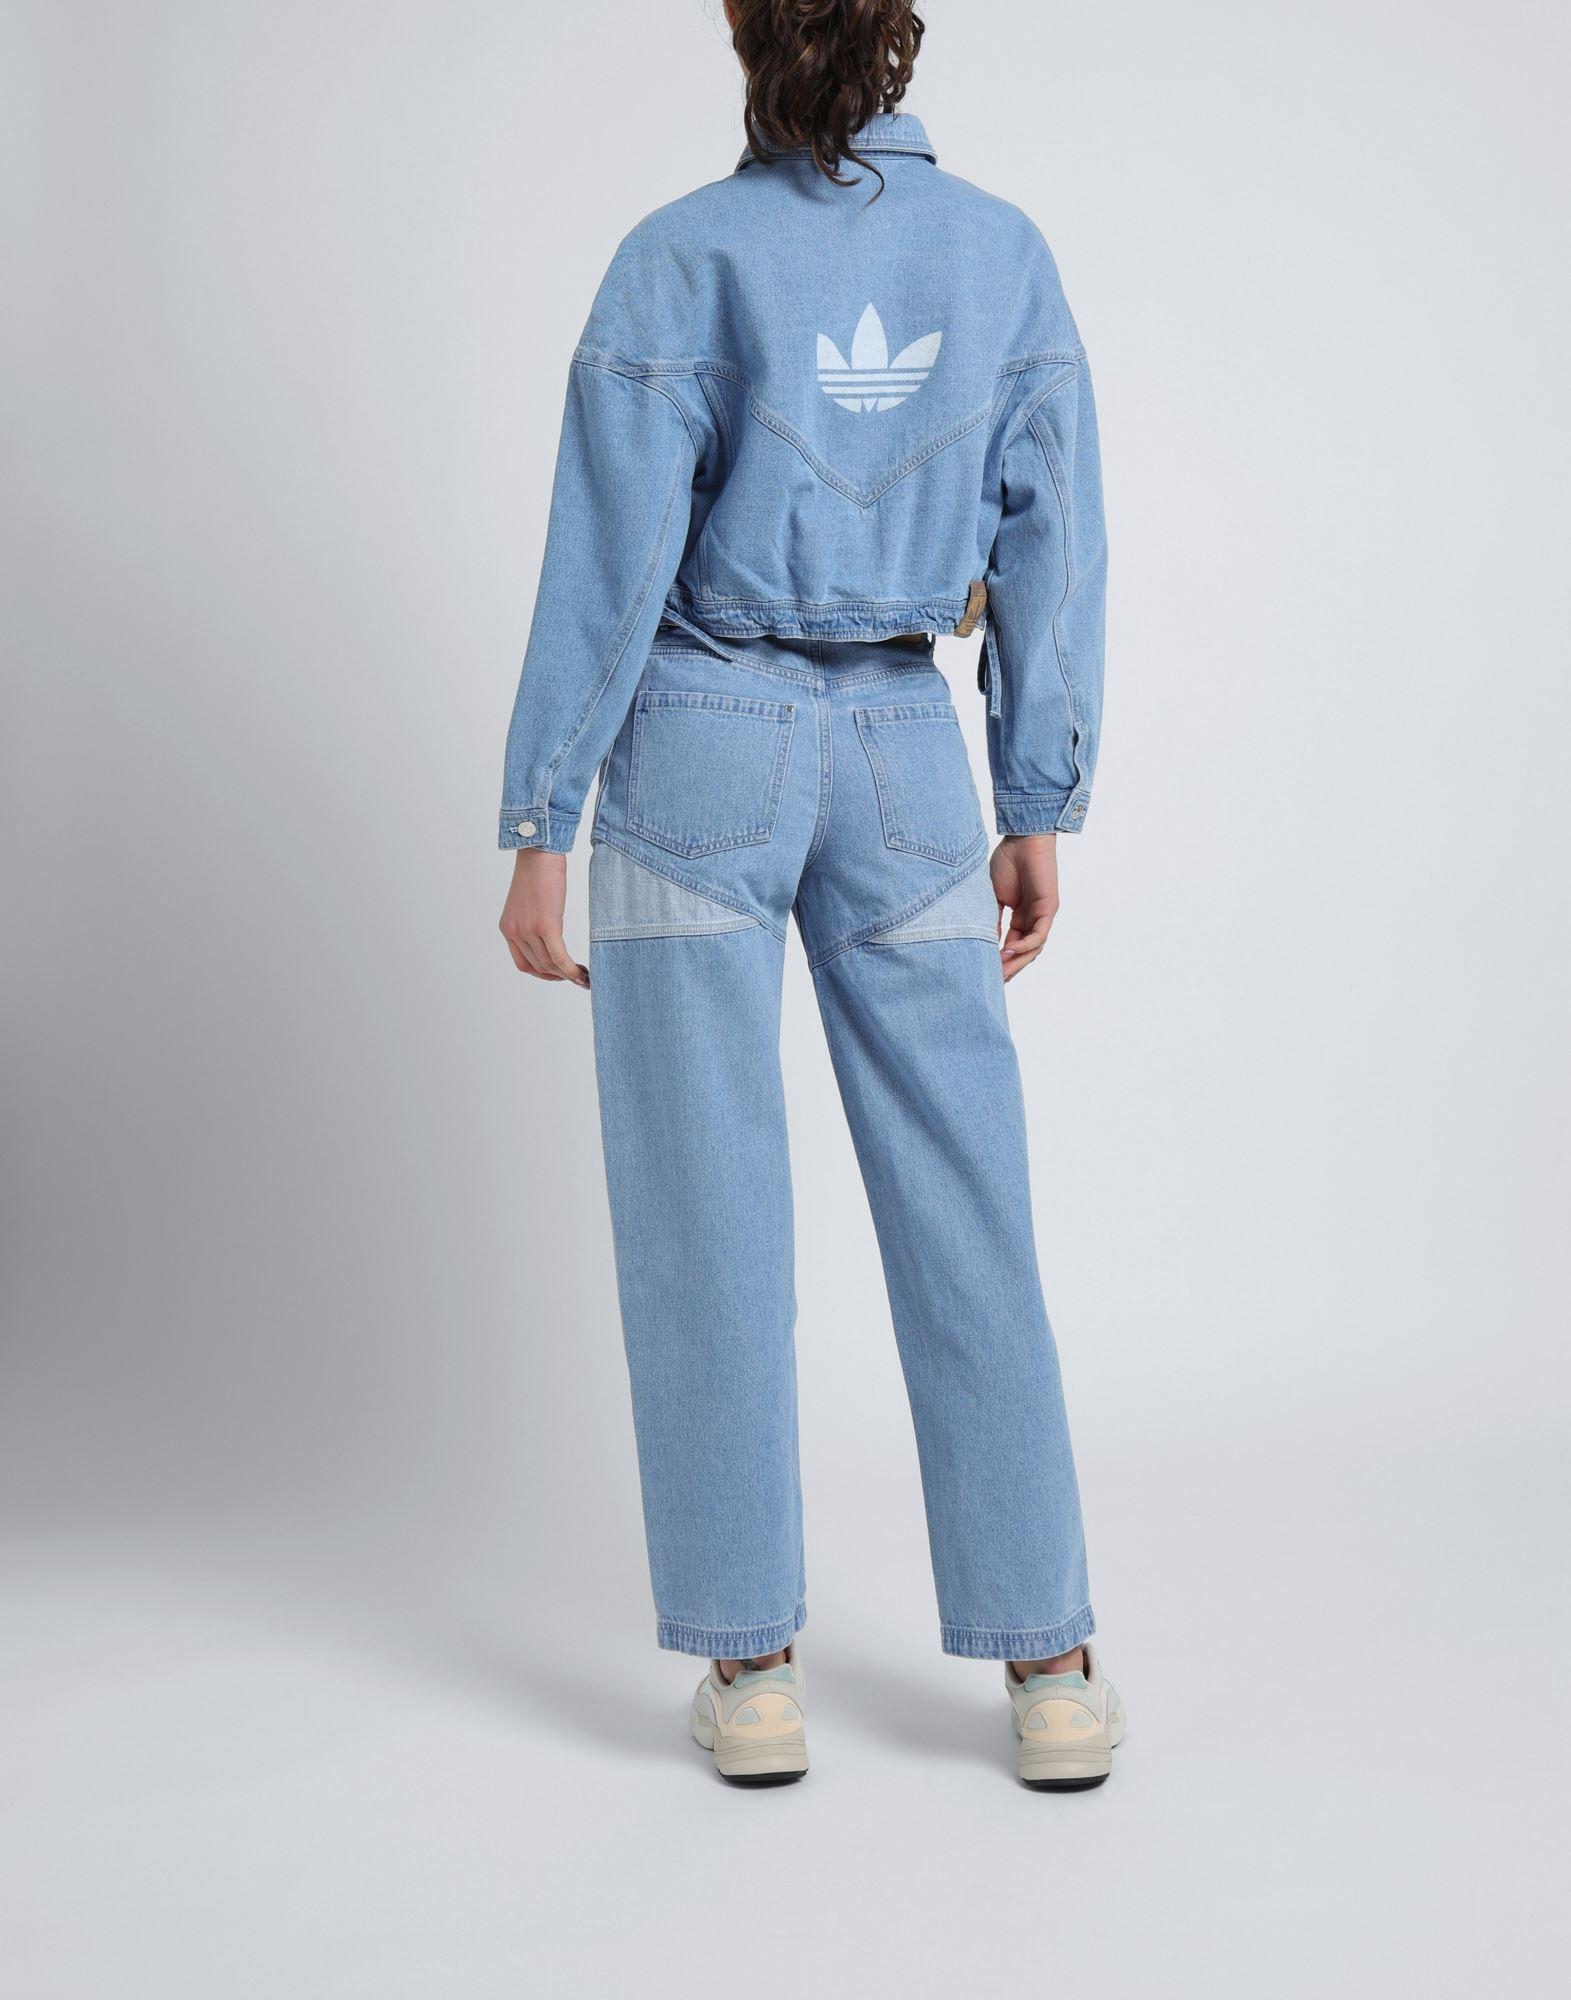 adidas Originals Denim Outerwear in Blue | Lyst